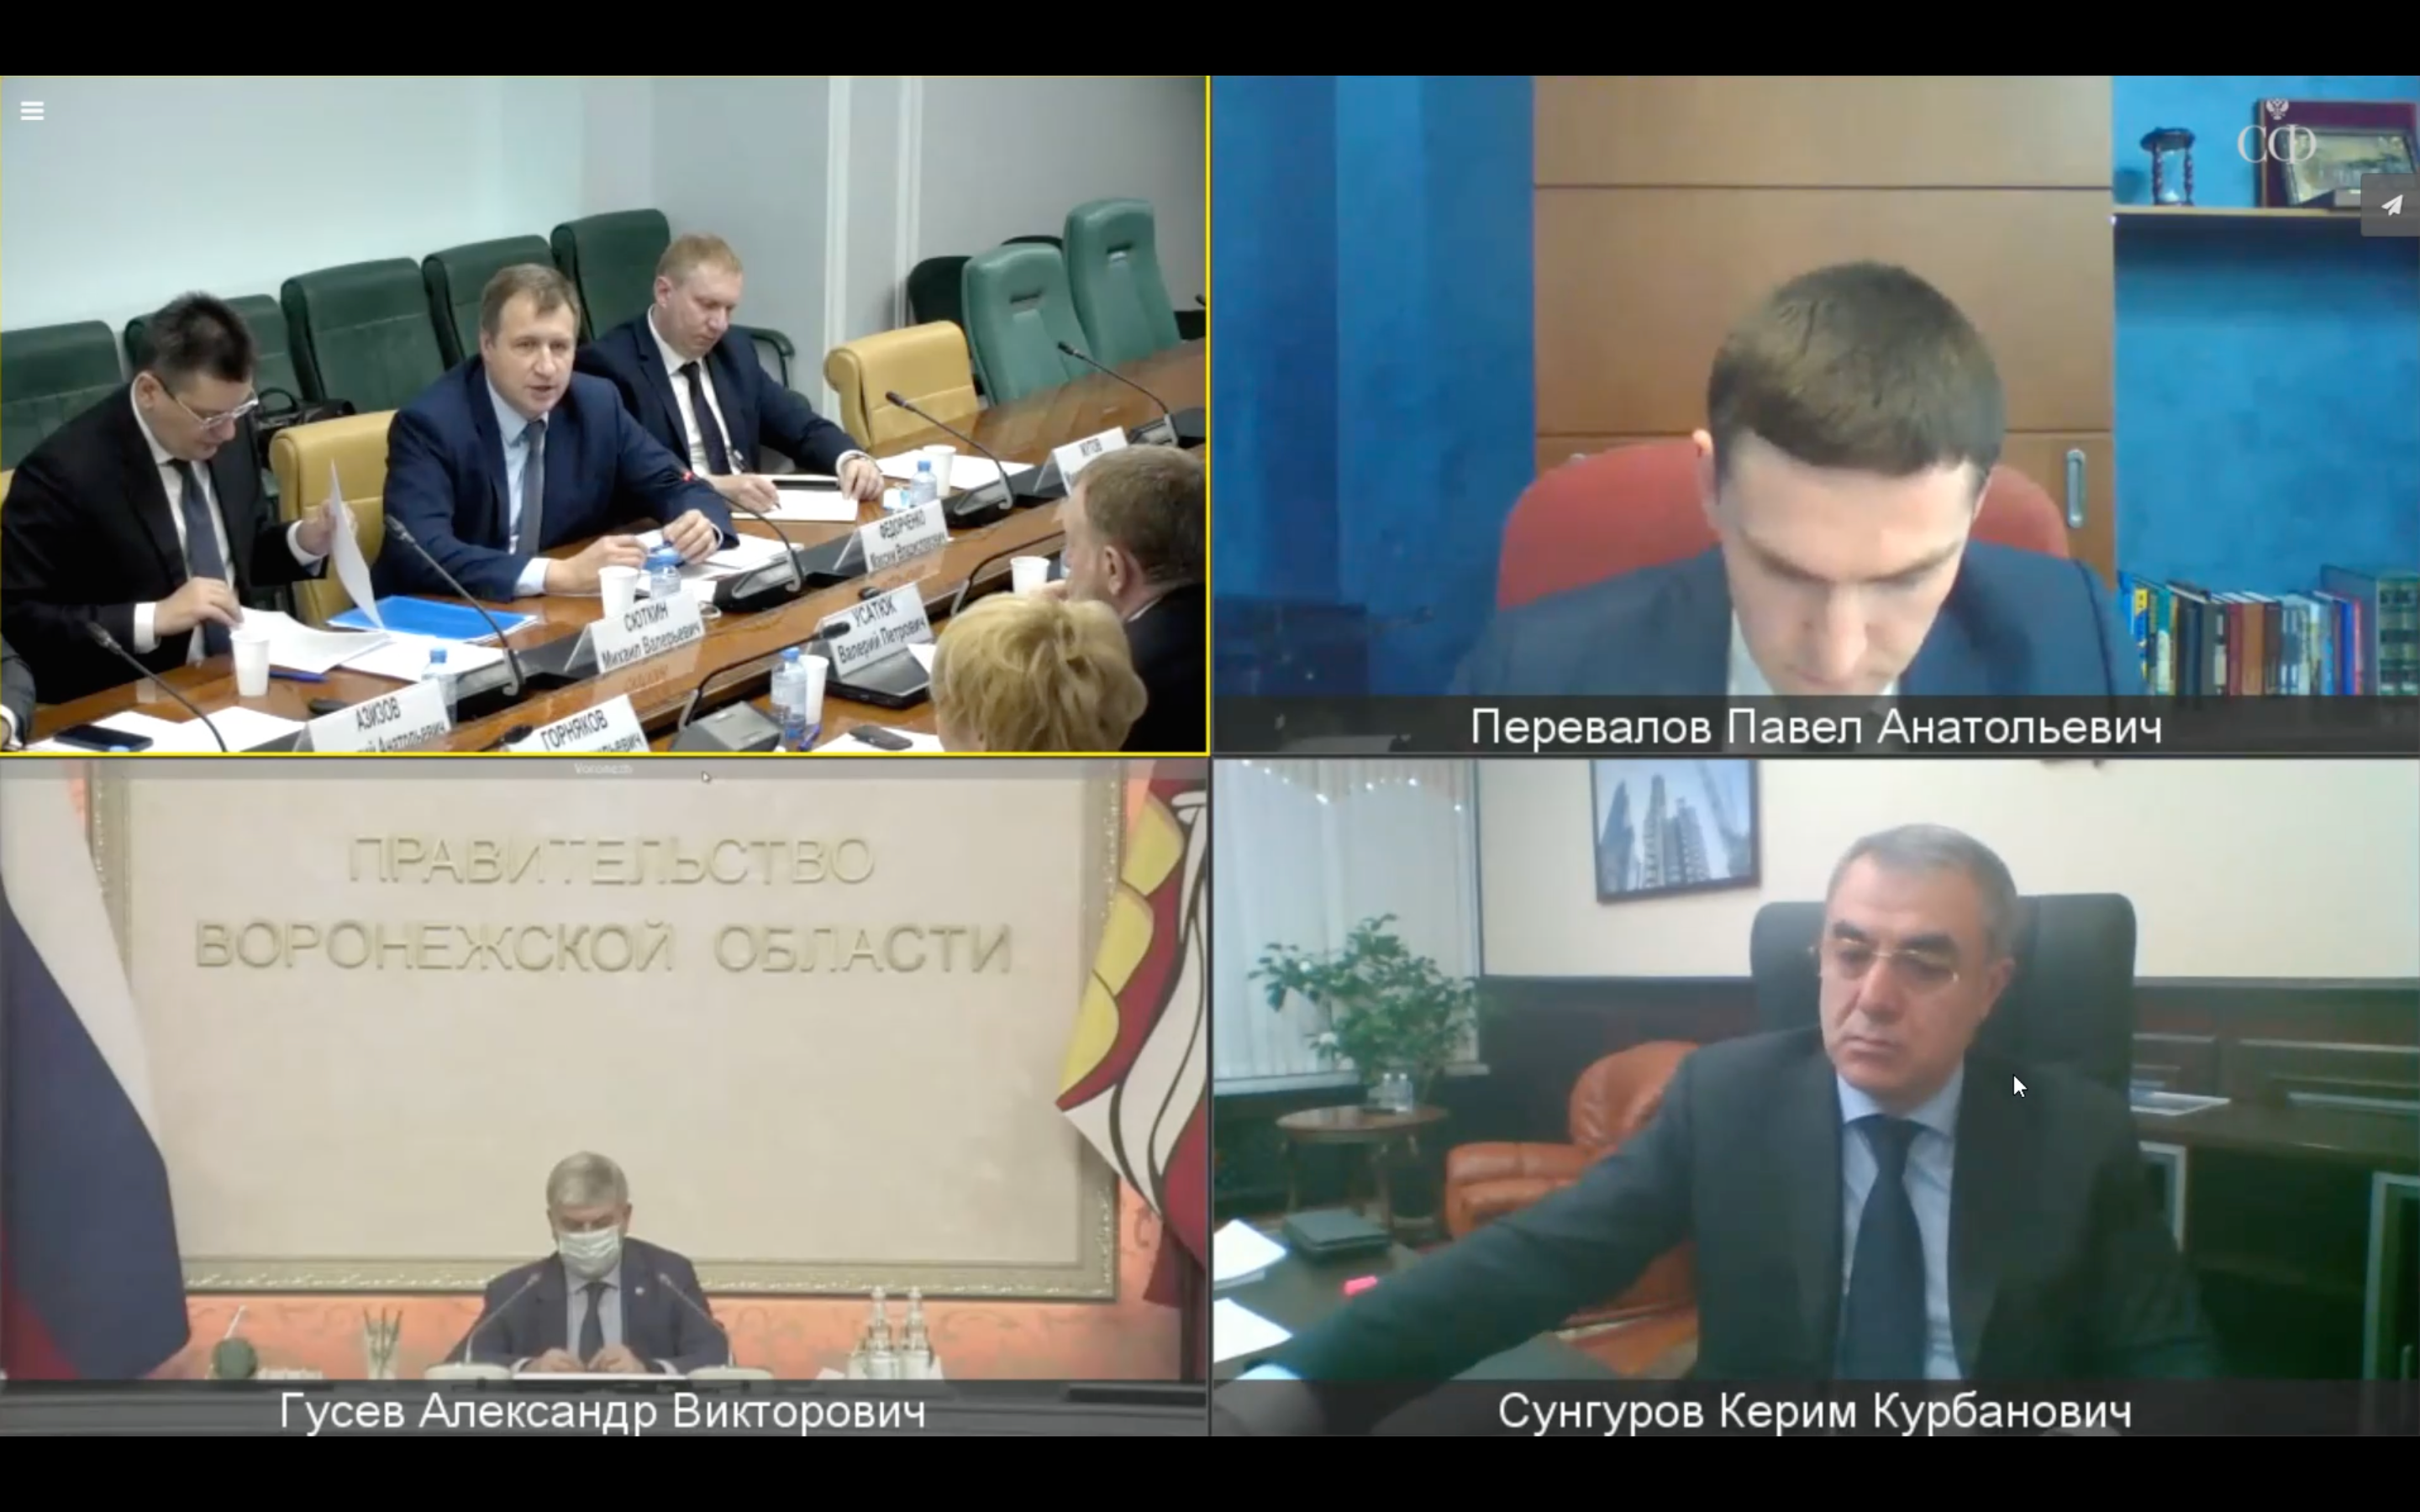 Вице-президент РСС М. Федорченко выступил в Совете Федерации по вопросам комплексного развития территорий